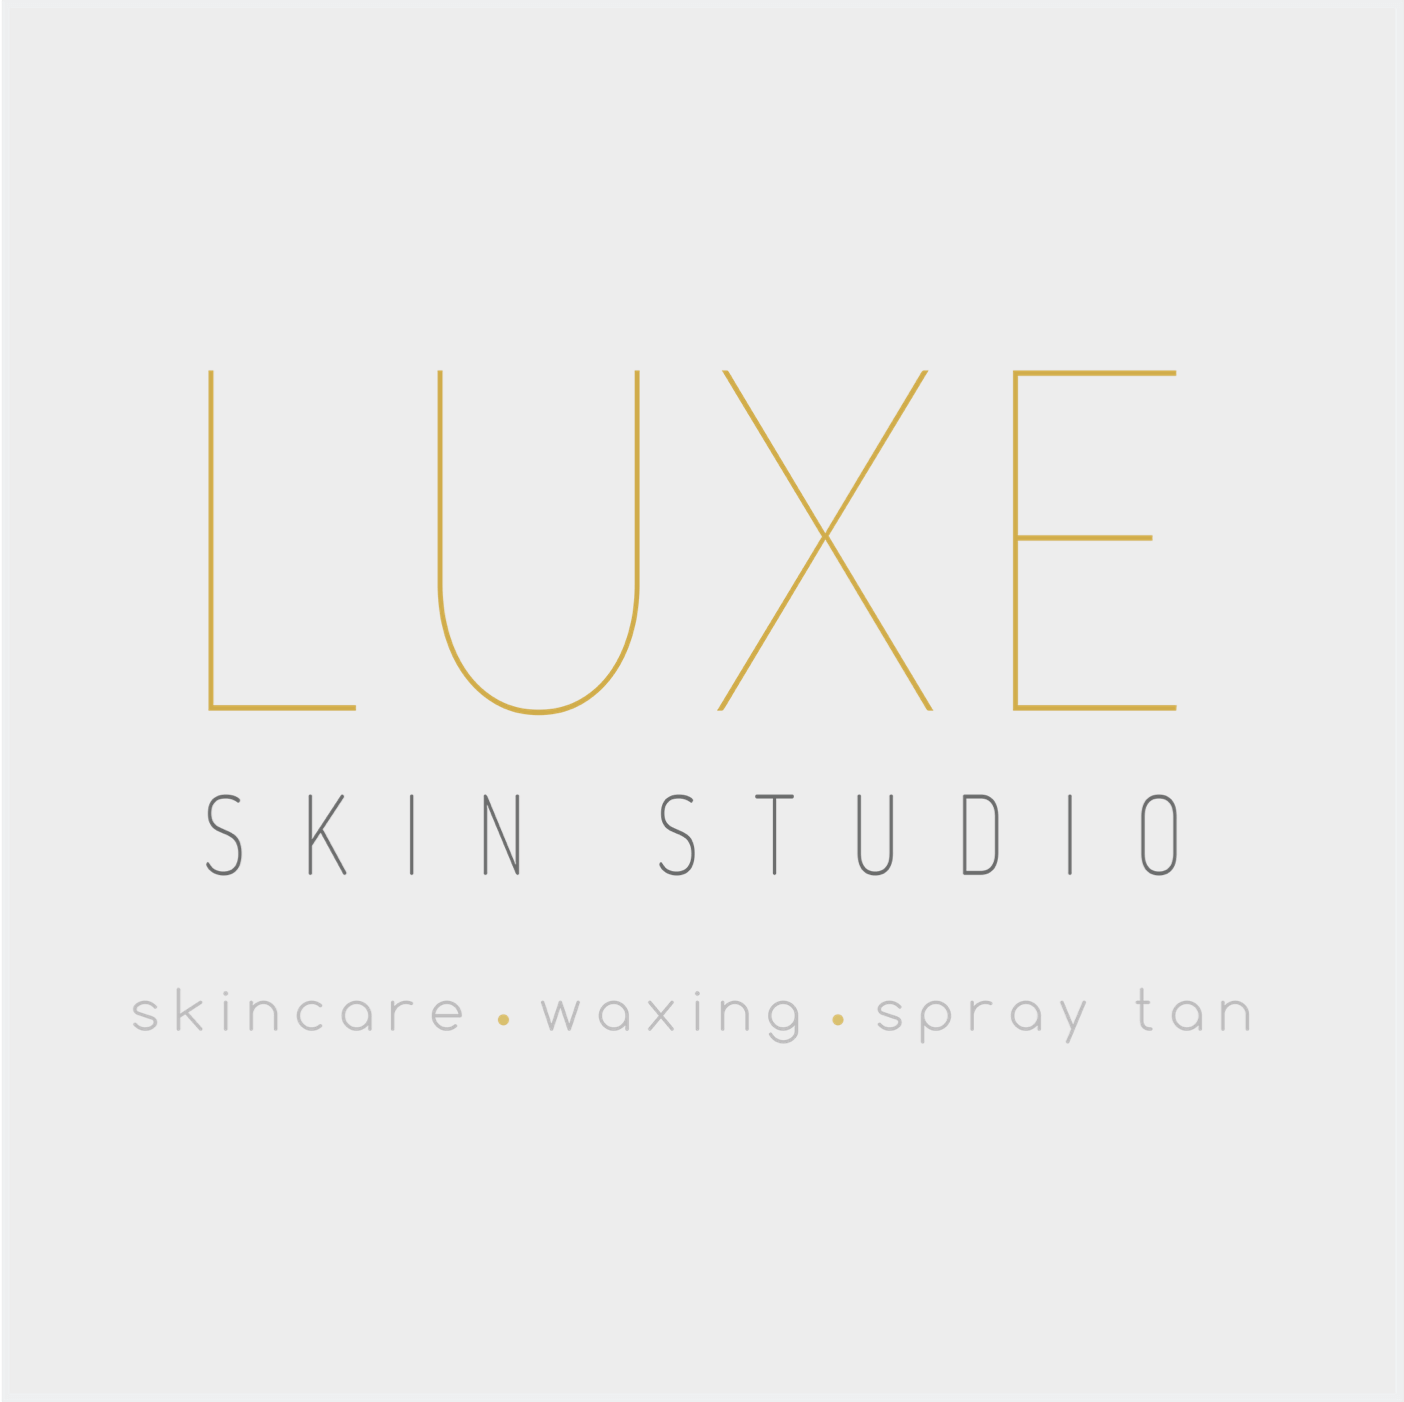 Luxe Skin Studio